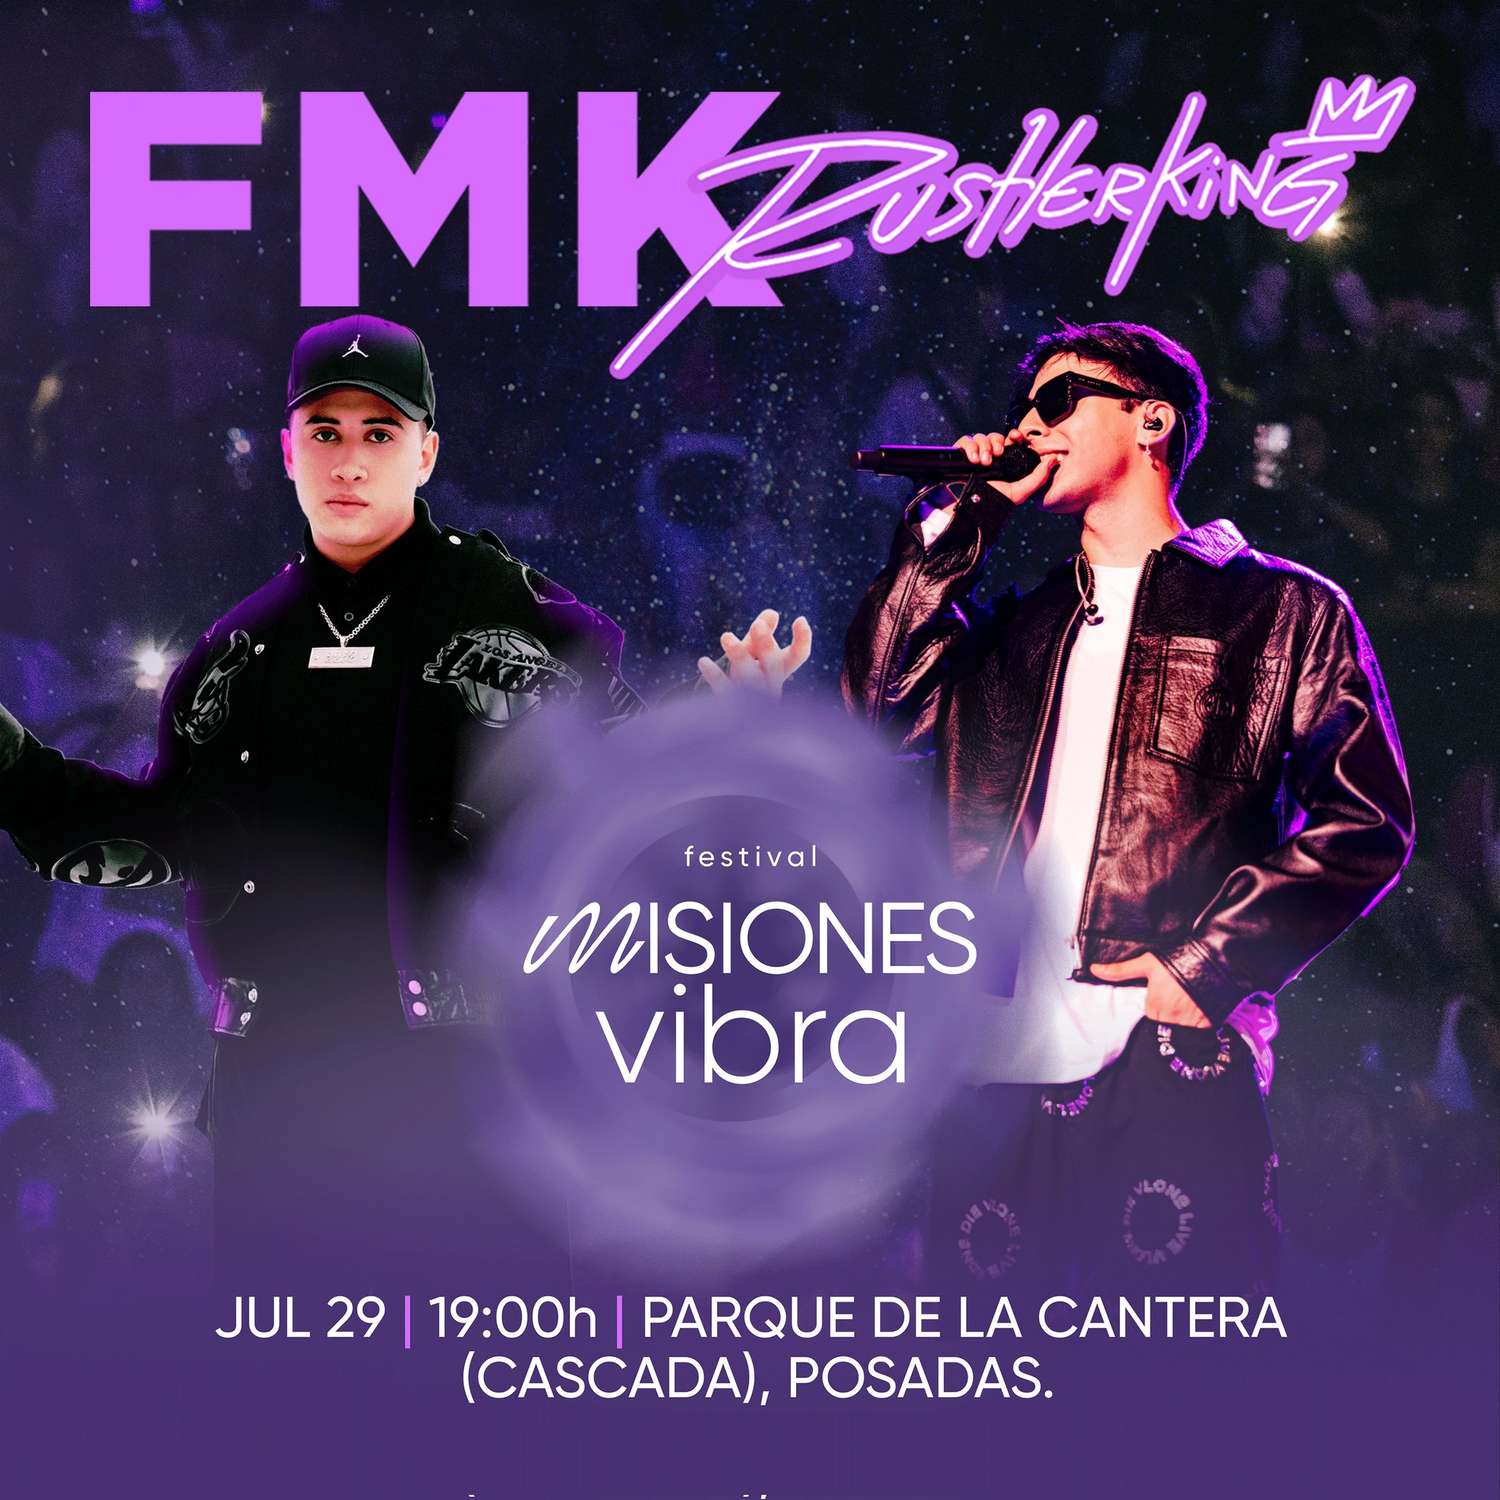 Posadas | Rusherking y FMK se presentarán juntos en un gran show en la Cascada el 29 de julio